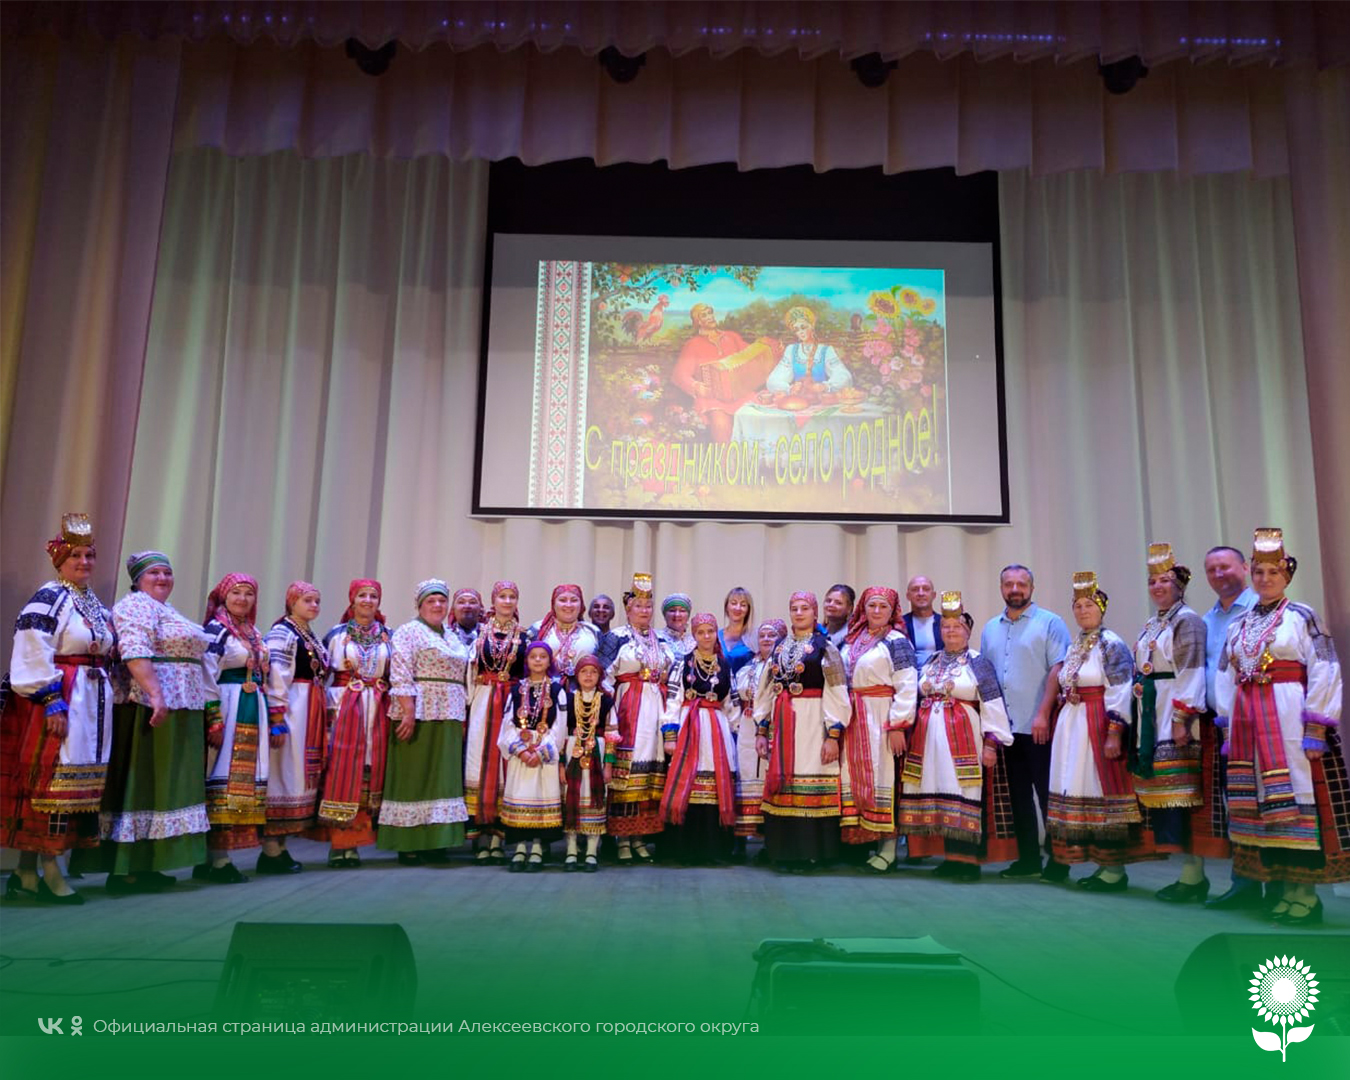 На прошедших выходных состоялся традиционный праздник День села Афанасьевка – «Пою тебе, сторонке звонкой!».